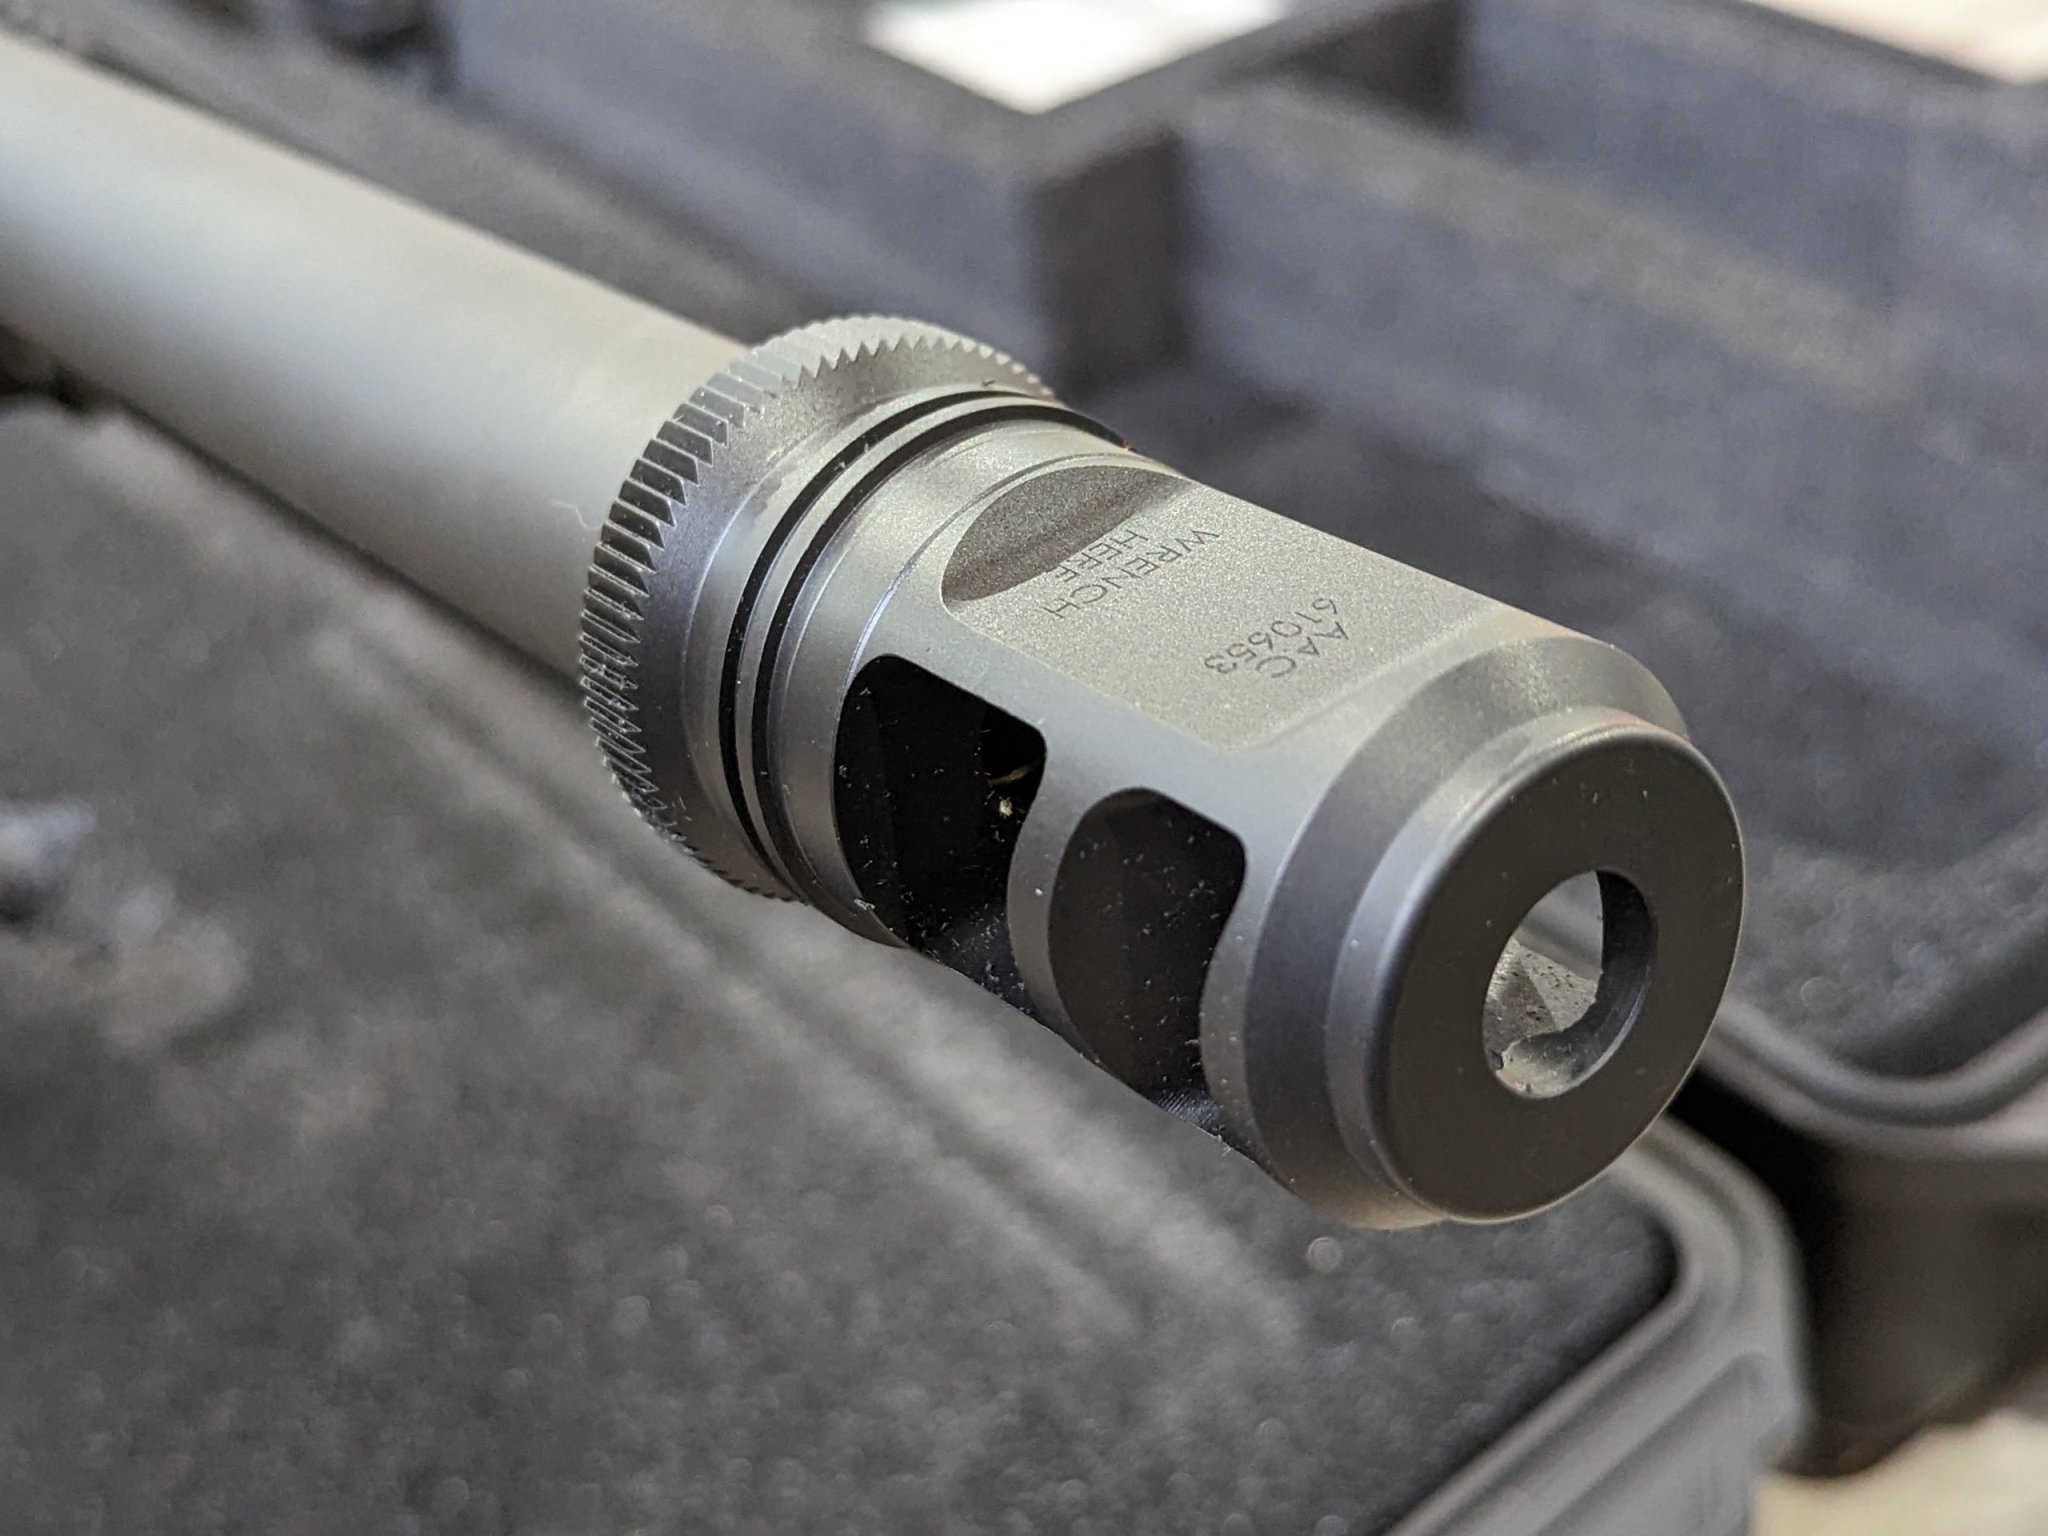 SOLD - Remington R2Mi 50 BMG (Bushmaster BA50) | Sniper's Hide Forum